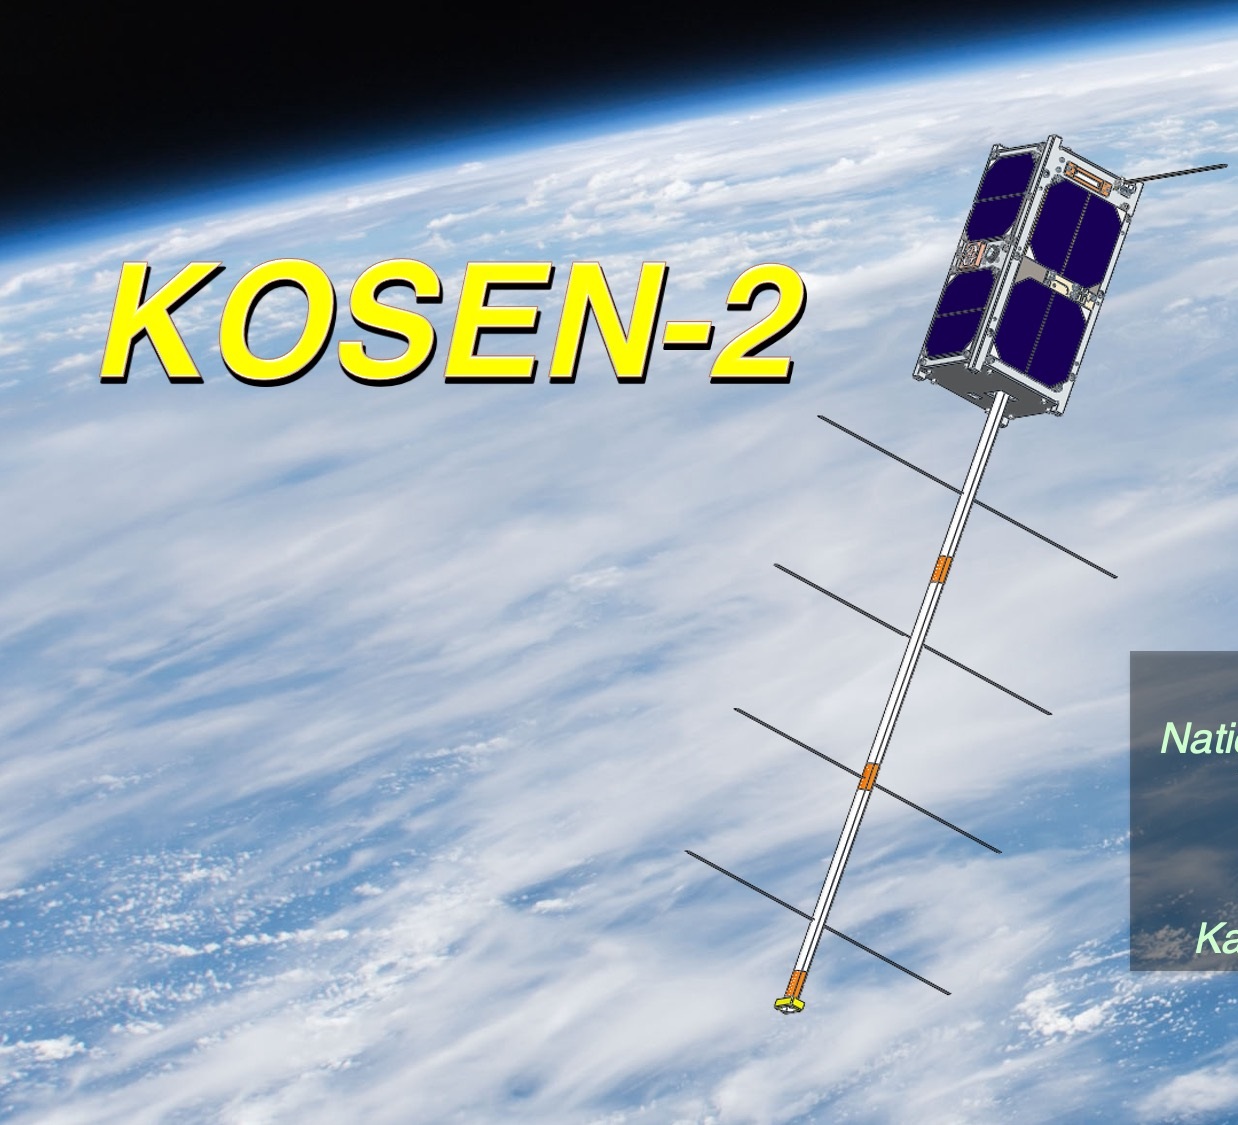 KOSEN-2